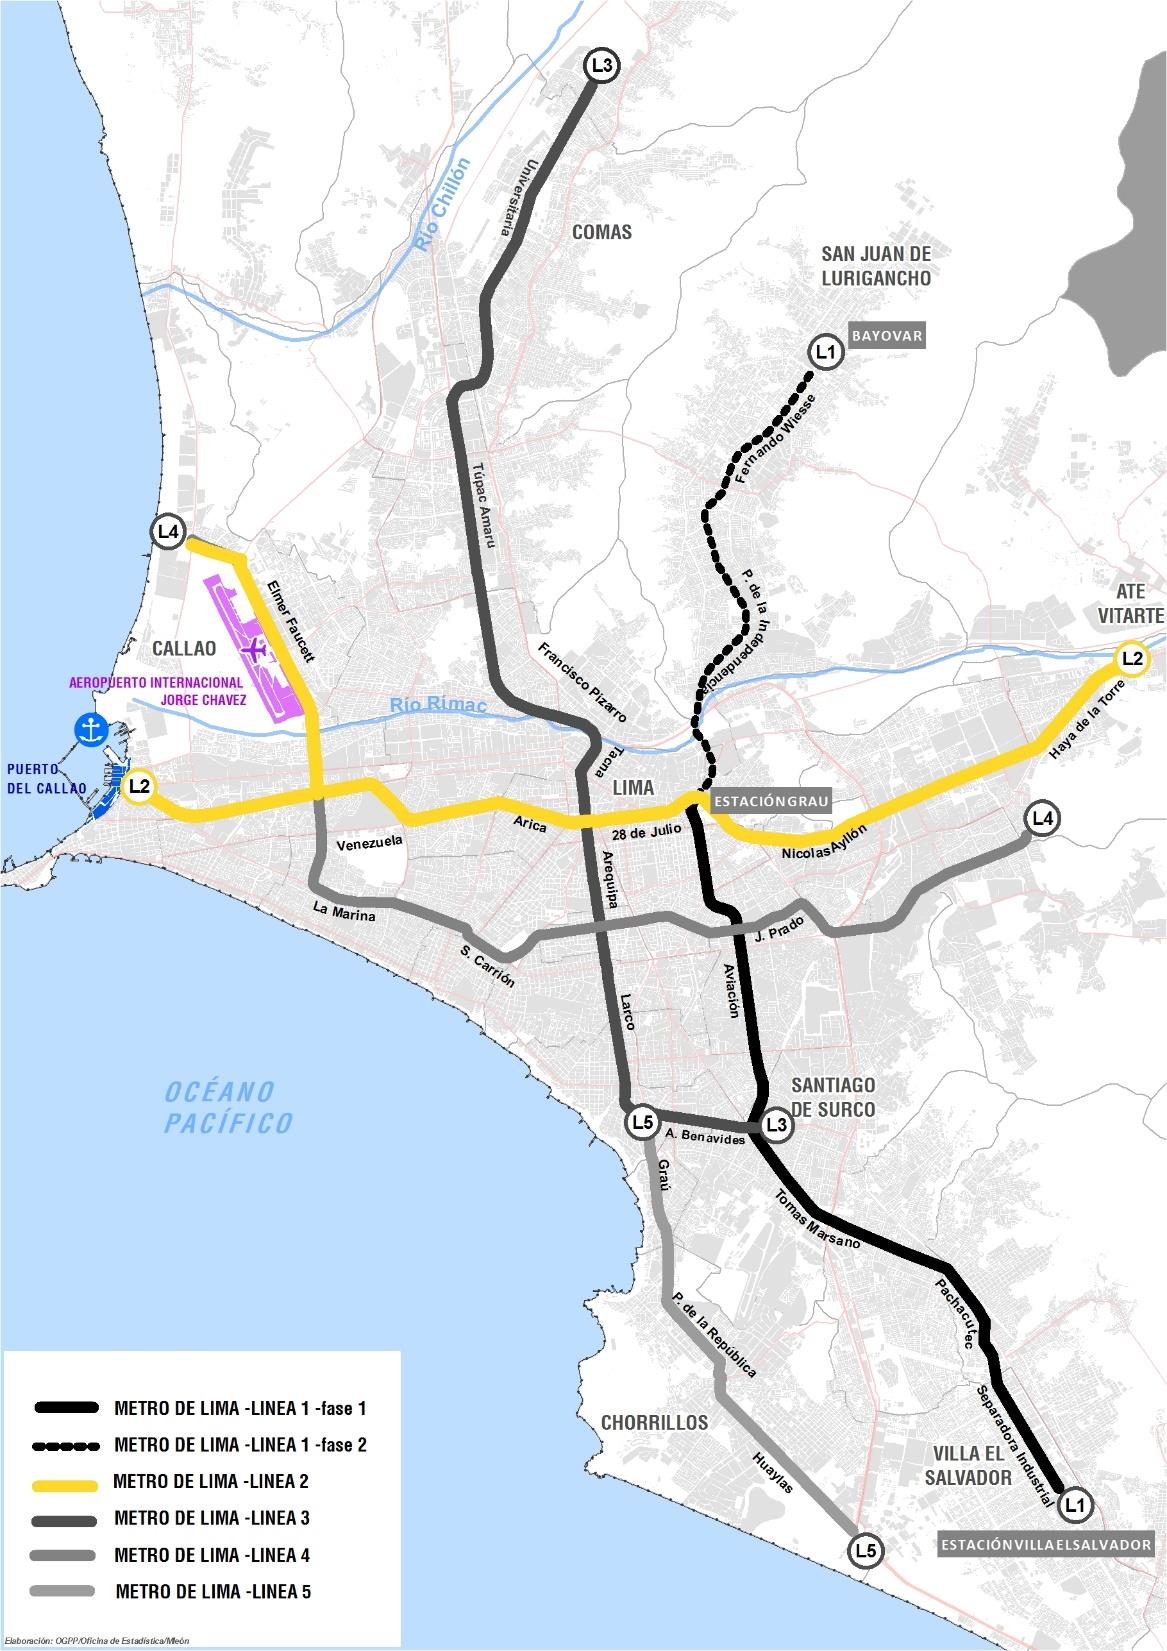 LINEA 2 Y RAMAL FAUCETT - GAMBETTA Meta al 2017: 7 000 metros de túneles (obra civil) 11 estaciones en construcción de un total de 35 Provisión de 5 trenes 80% de ejecución del